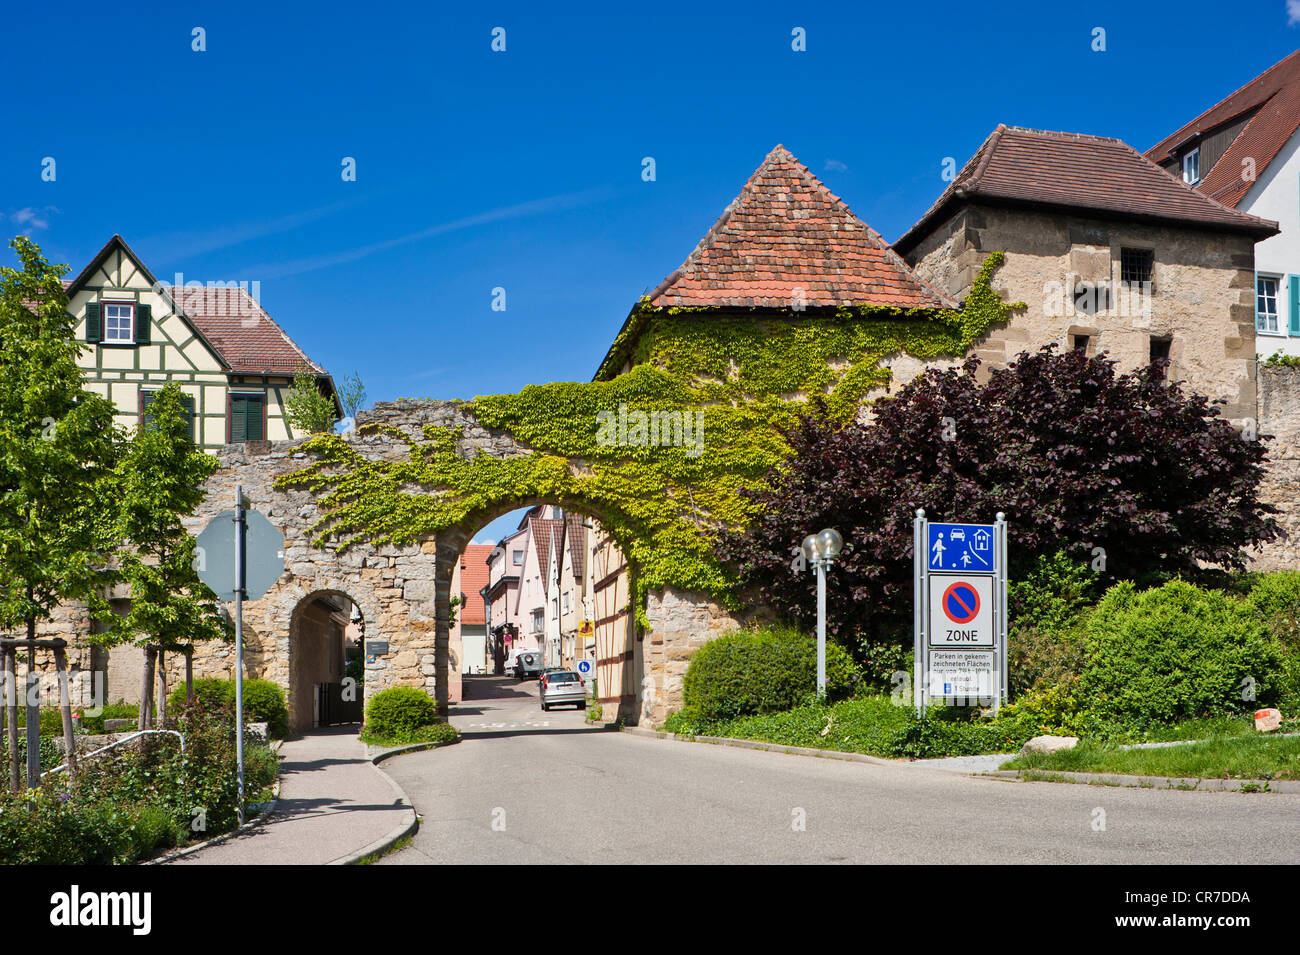 Ex cinta muraria con Grabentor gate e Diebsturm tower, Marbach am Neckar, valle del Neckar, Baden-Wuerttemberg, Germania, Europa Foto Stock